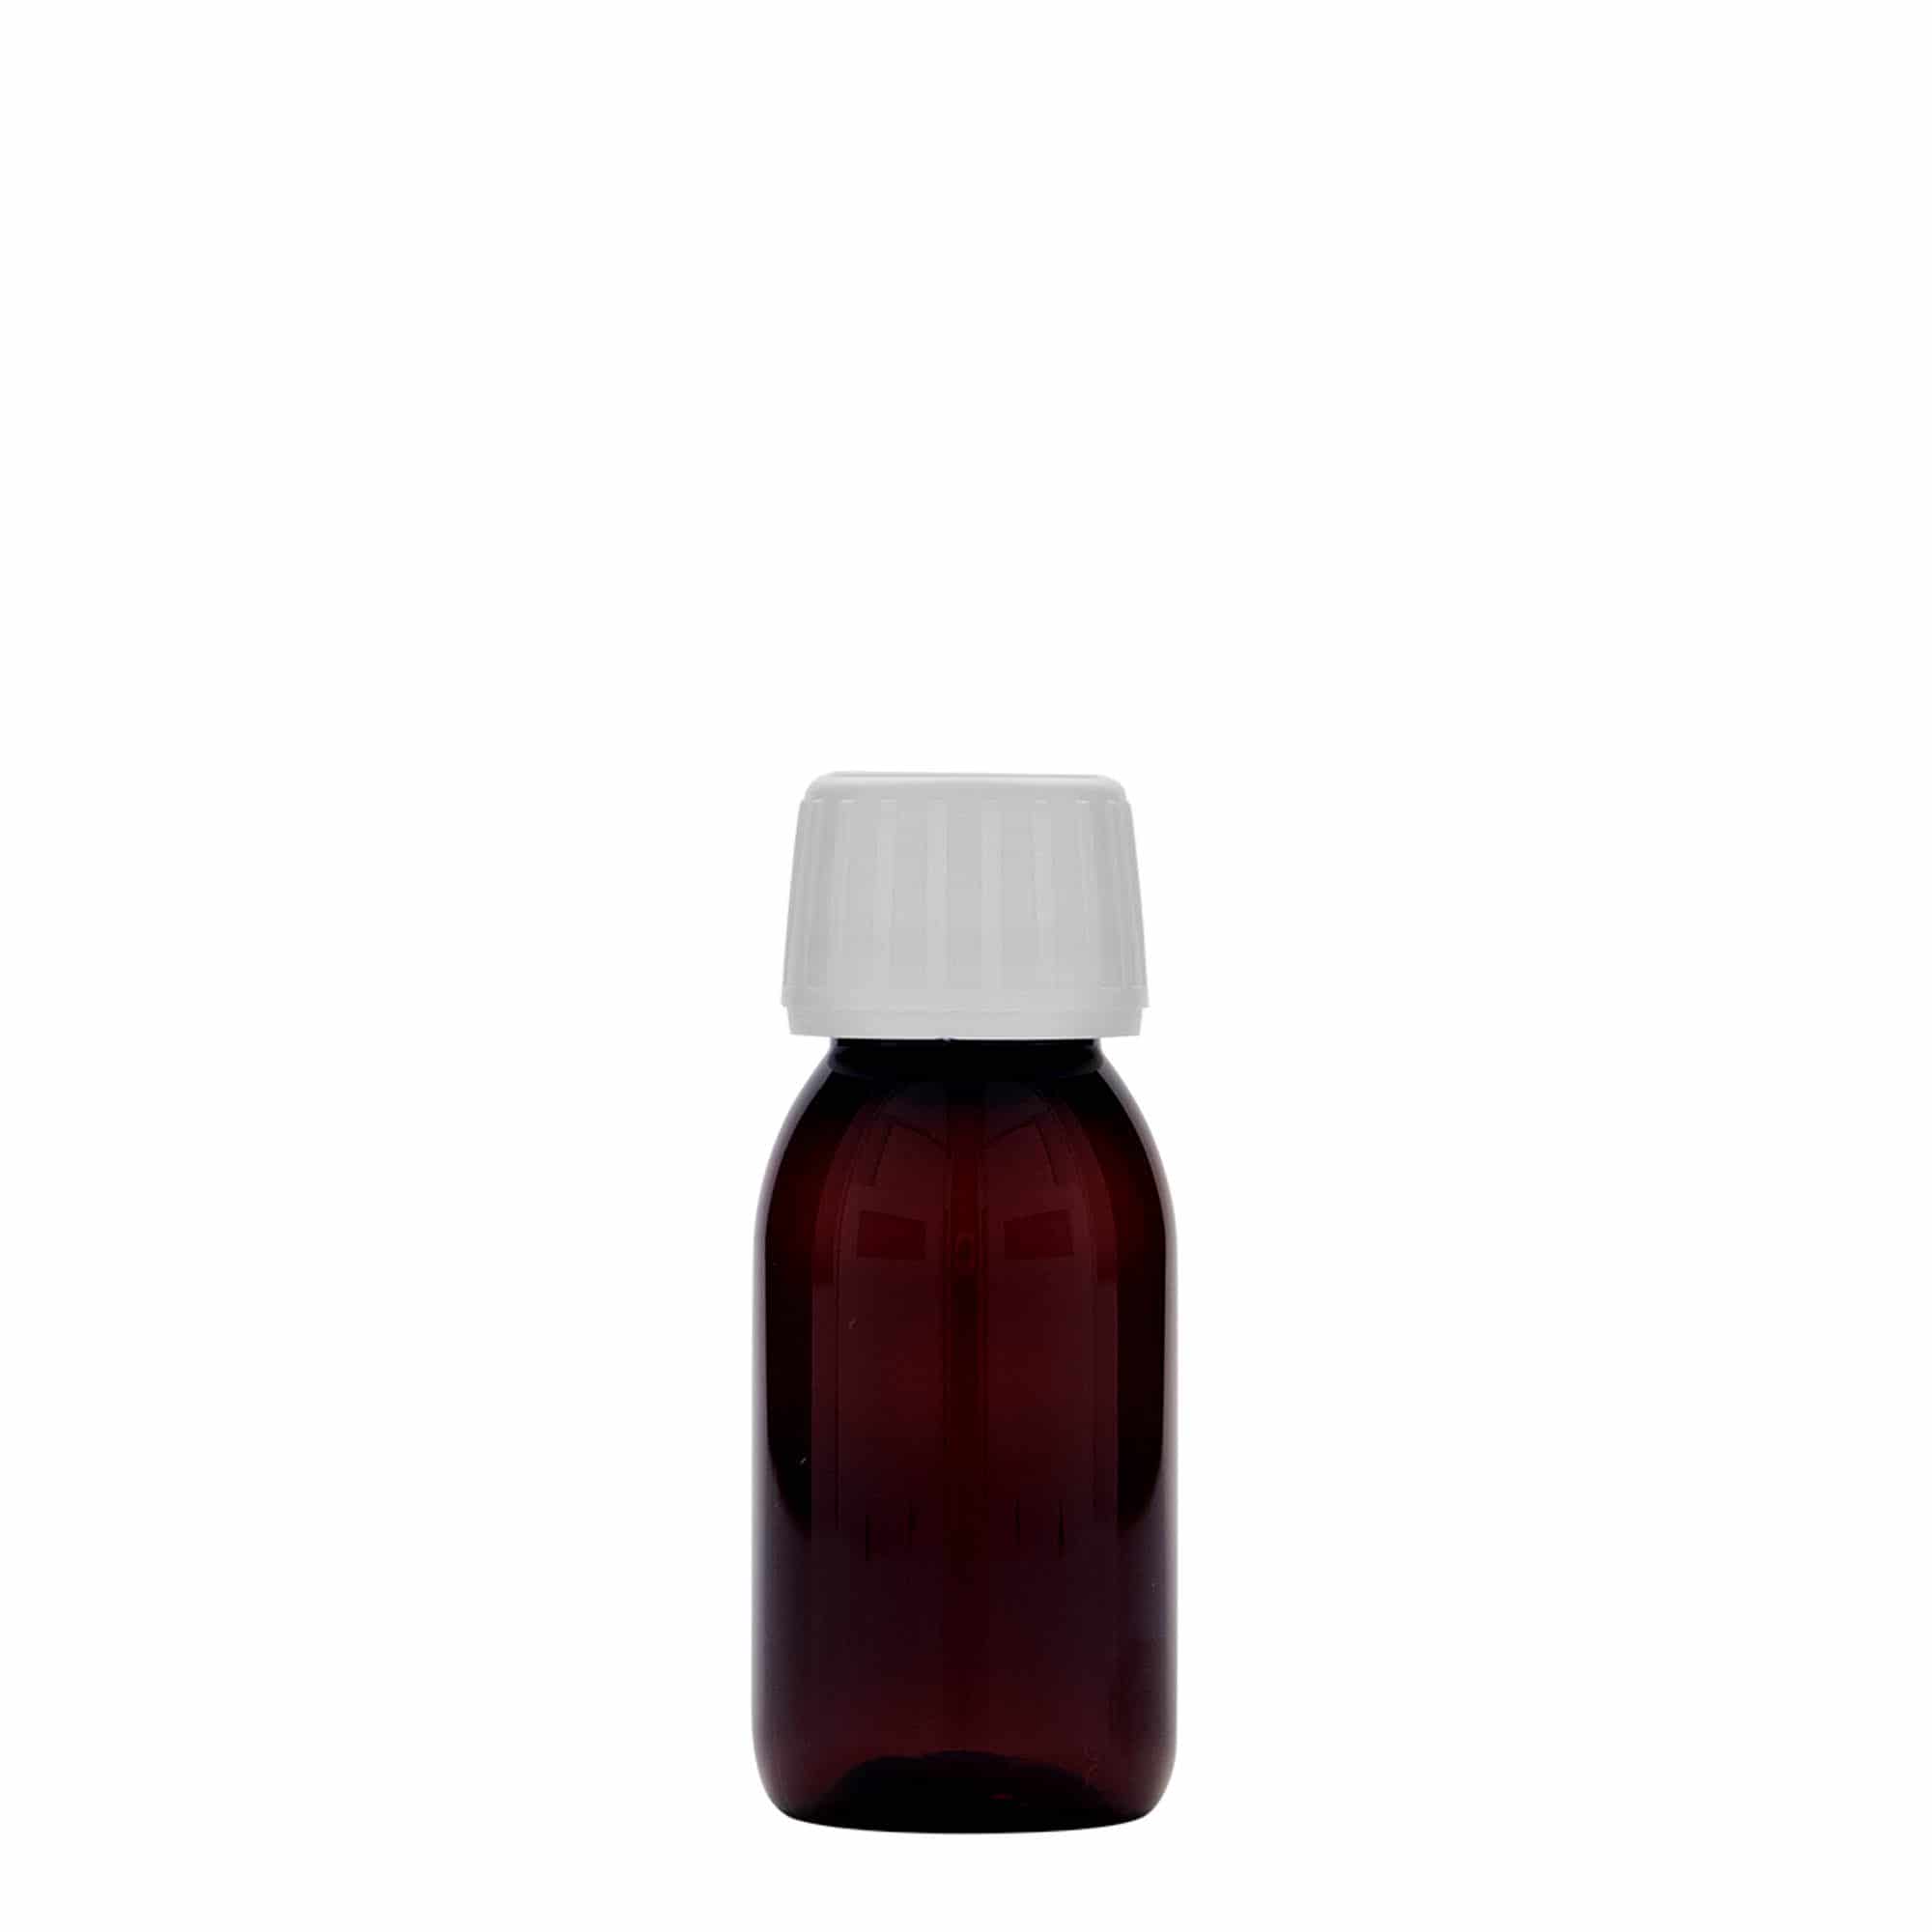 60 ml butelka farmaceutyczna PET, kolor brązowy, tworzywo sztuczne, zamknięcie: PP 28